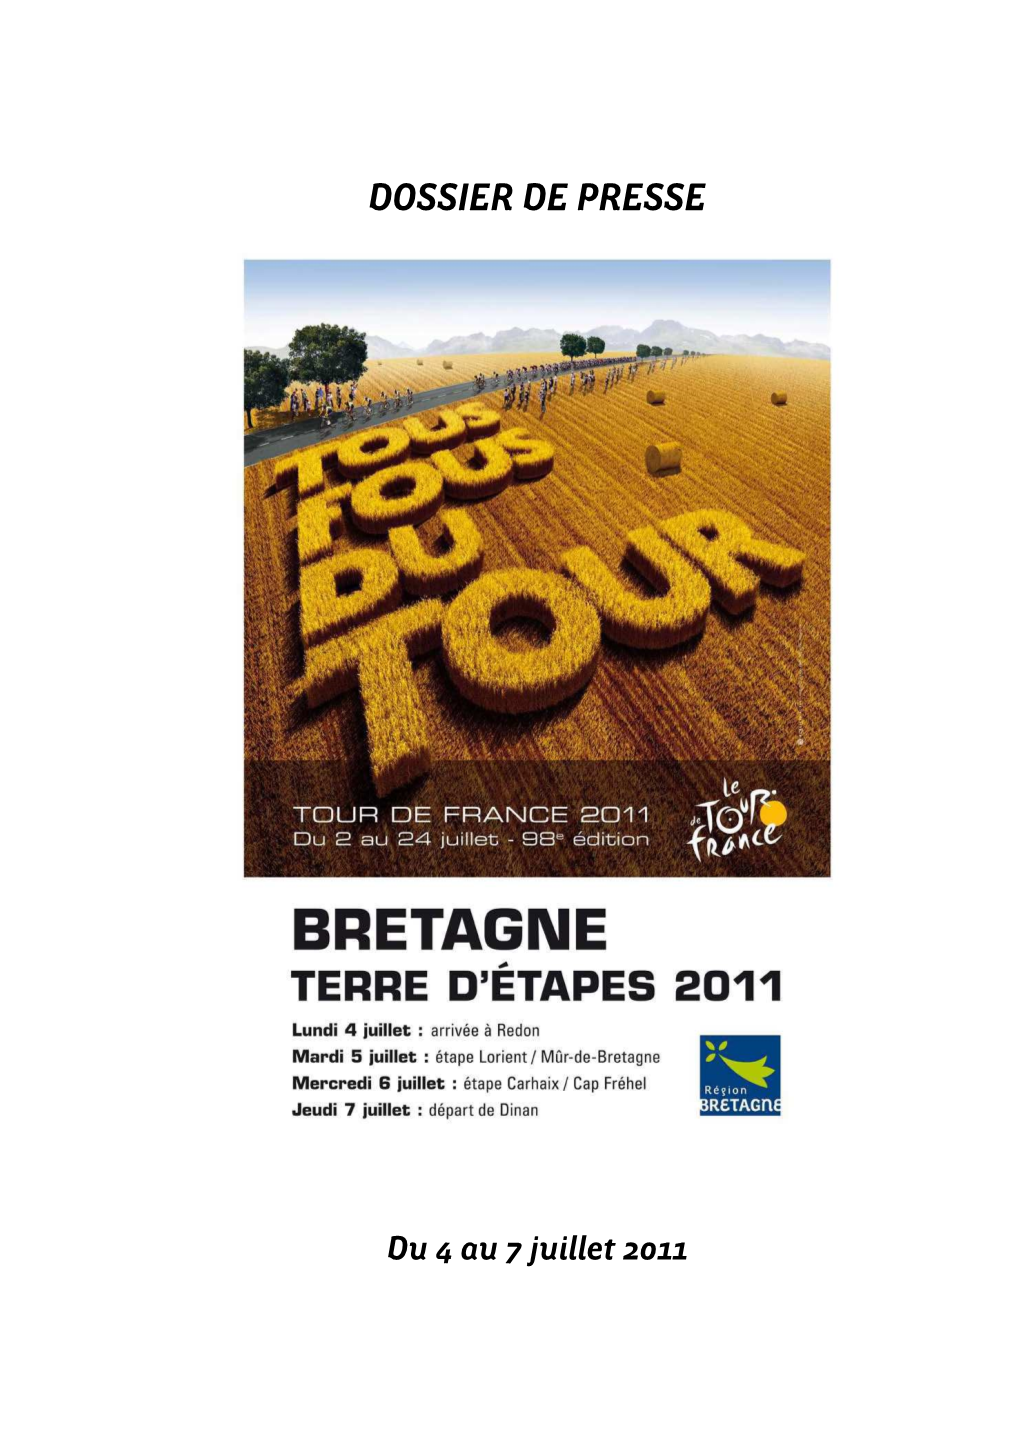 225 Bis DP Tour De France 2011